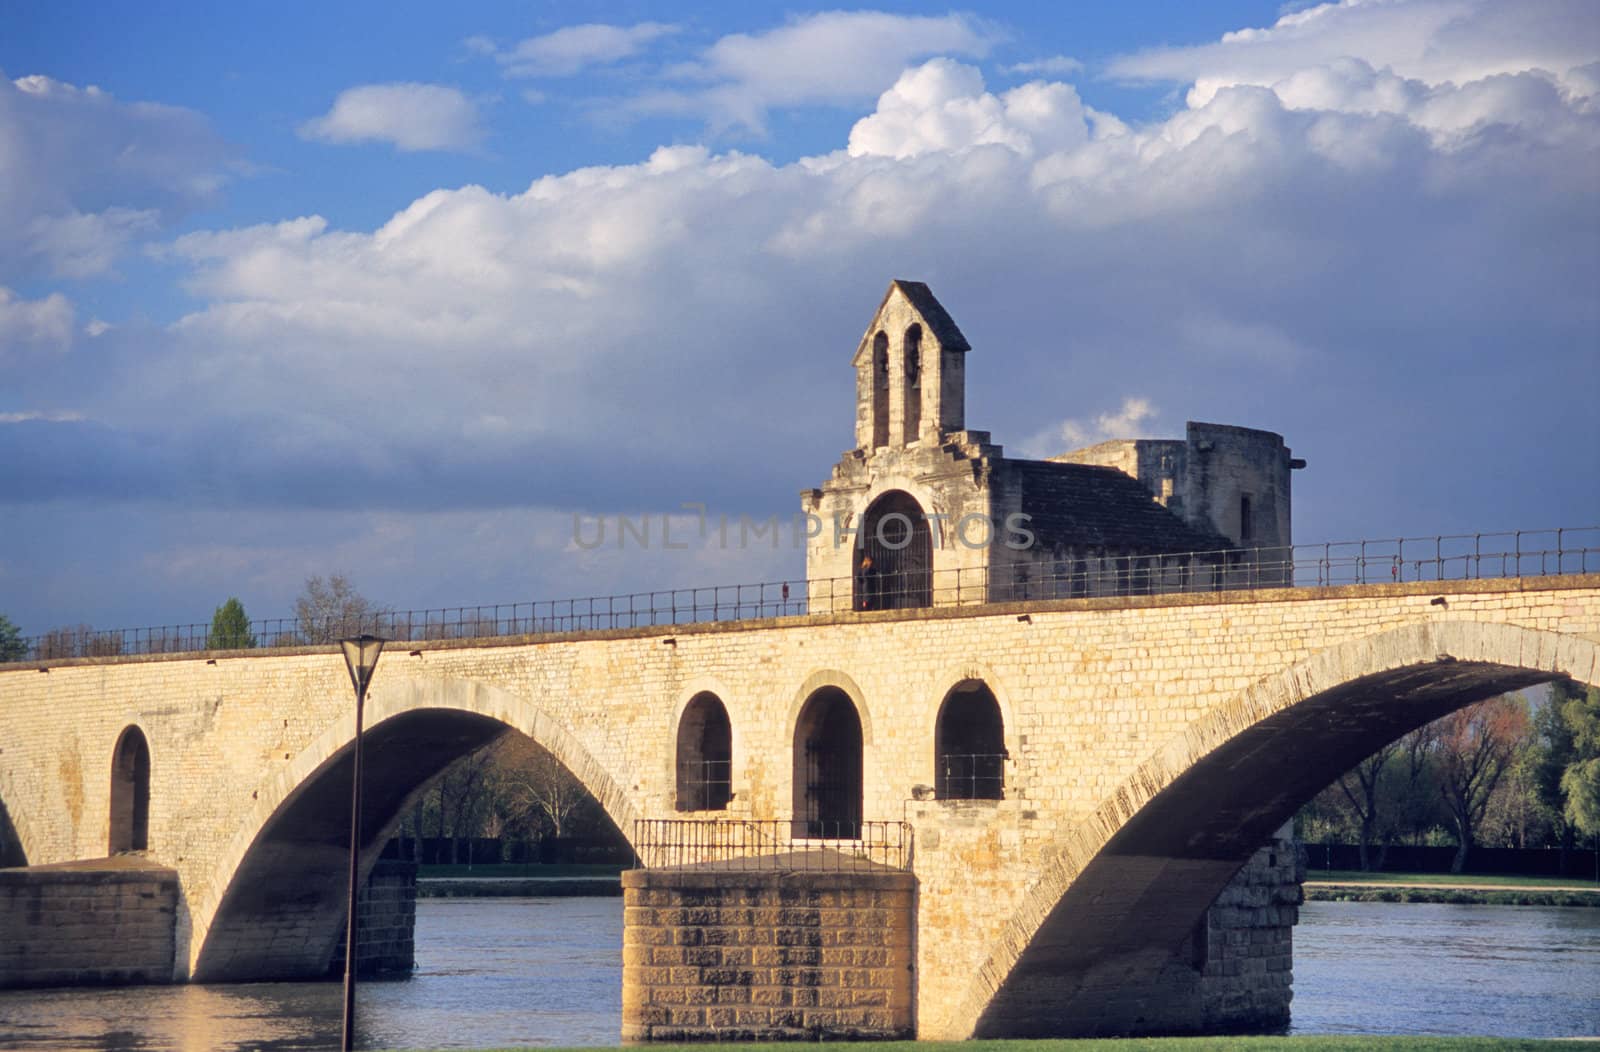 The famous St. Benezet bridge in Avignon, France made famous by the folk song "Sur la Pont D'Avignon."